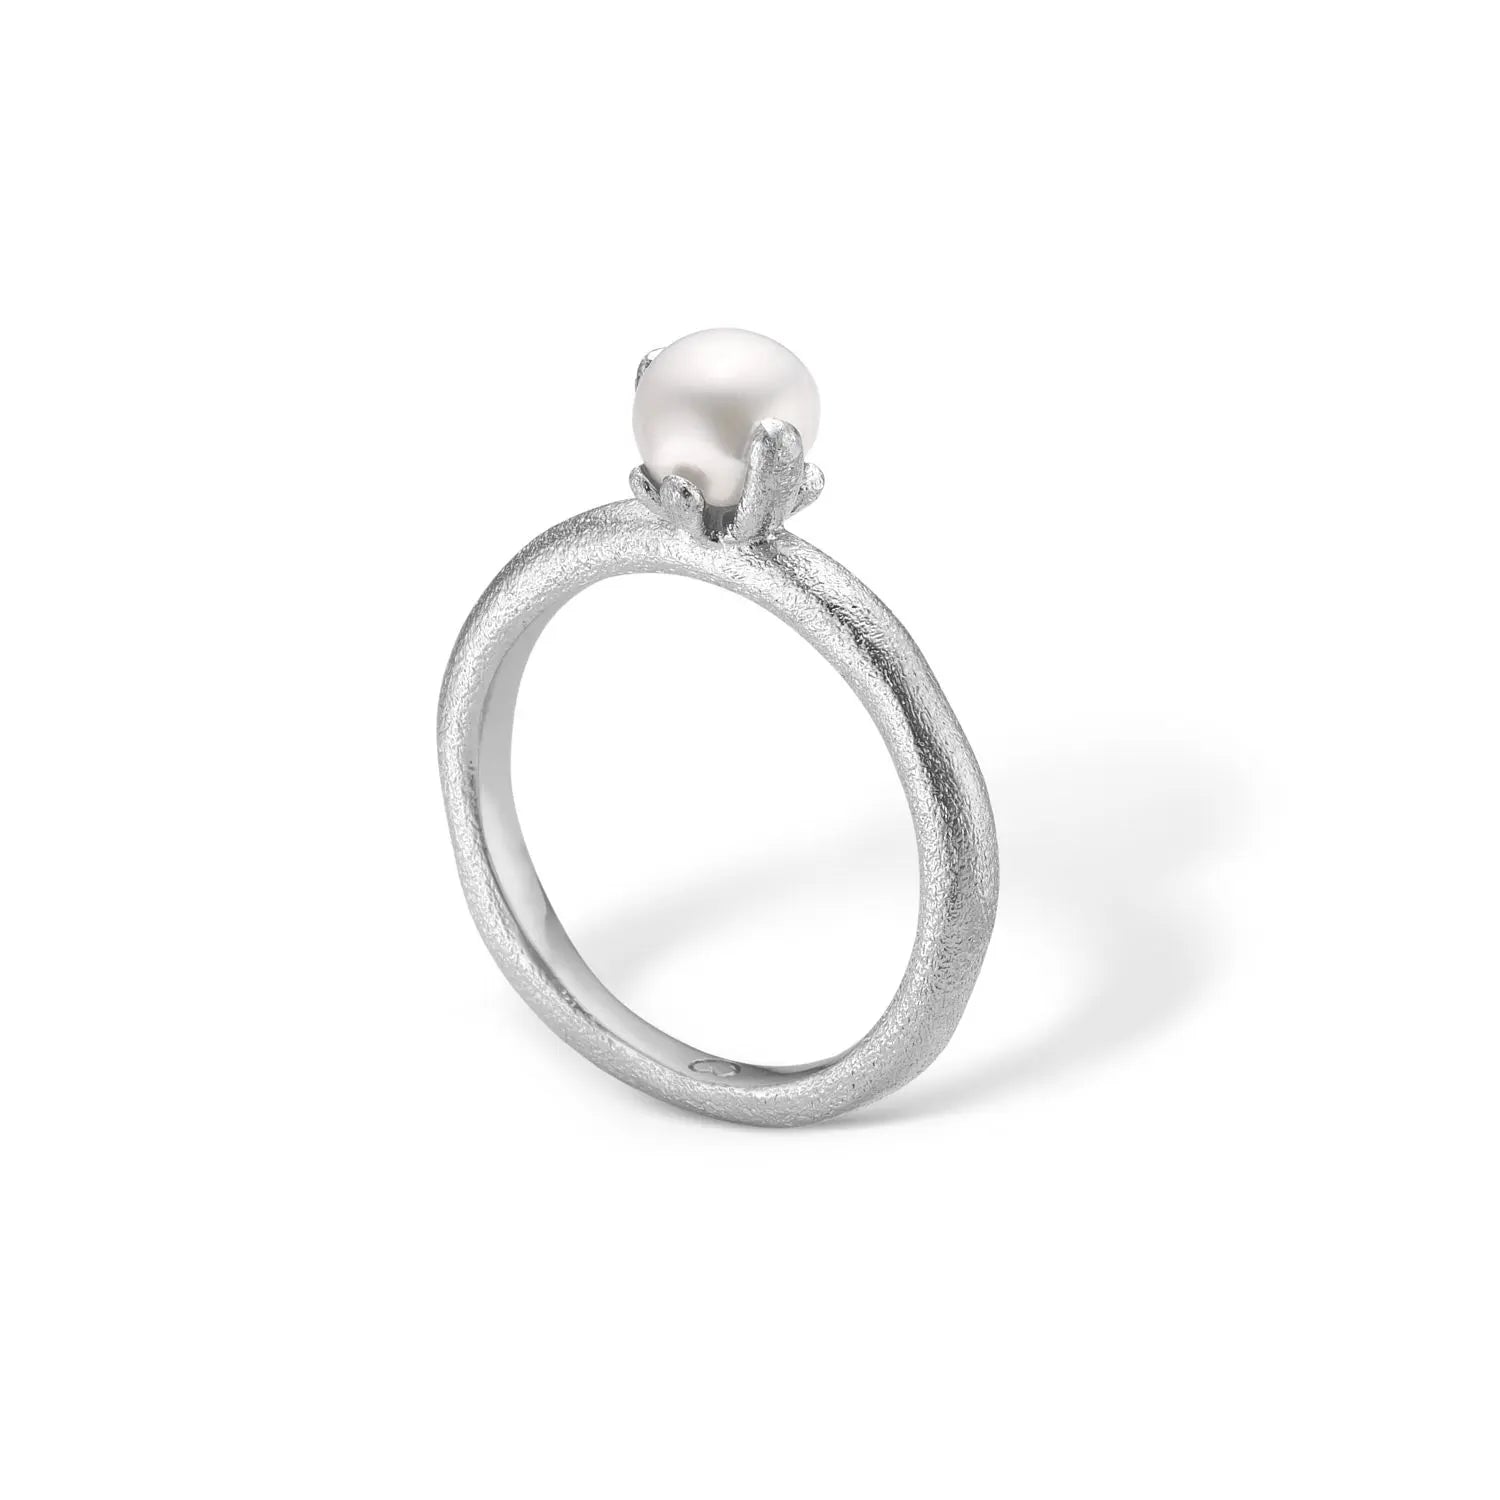 B-sølv ring rhod. hvid perle fra Blossom Of Copenhagen